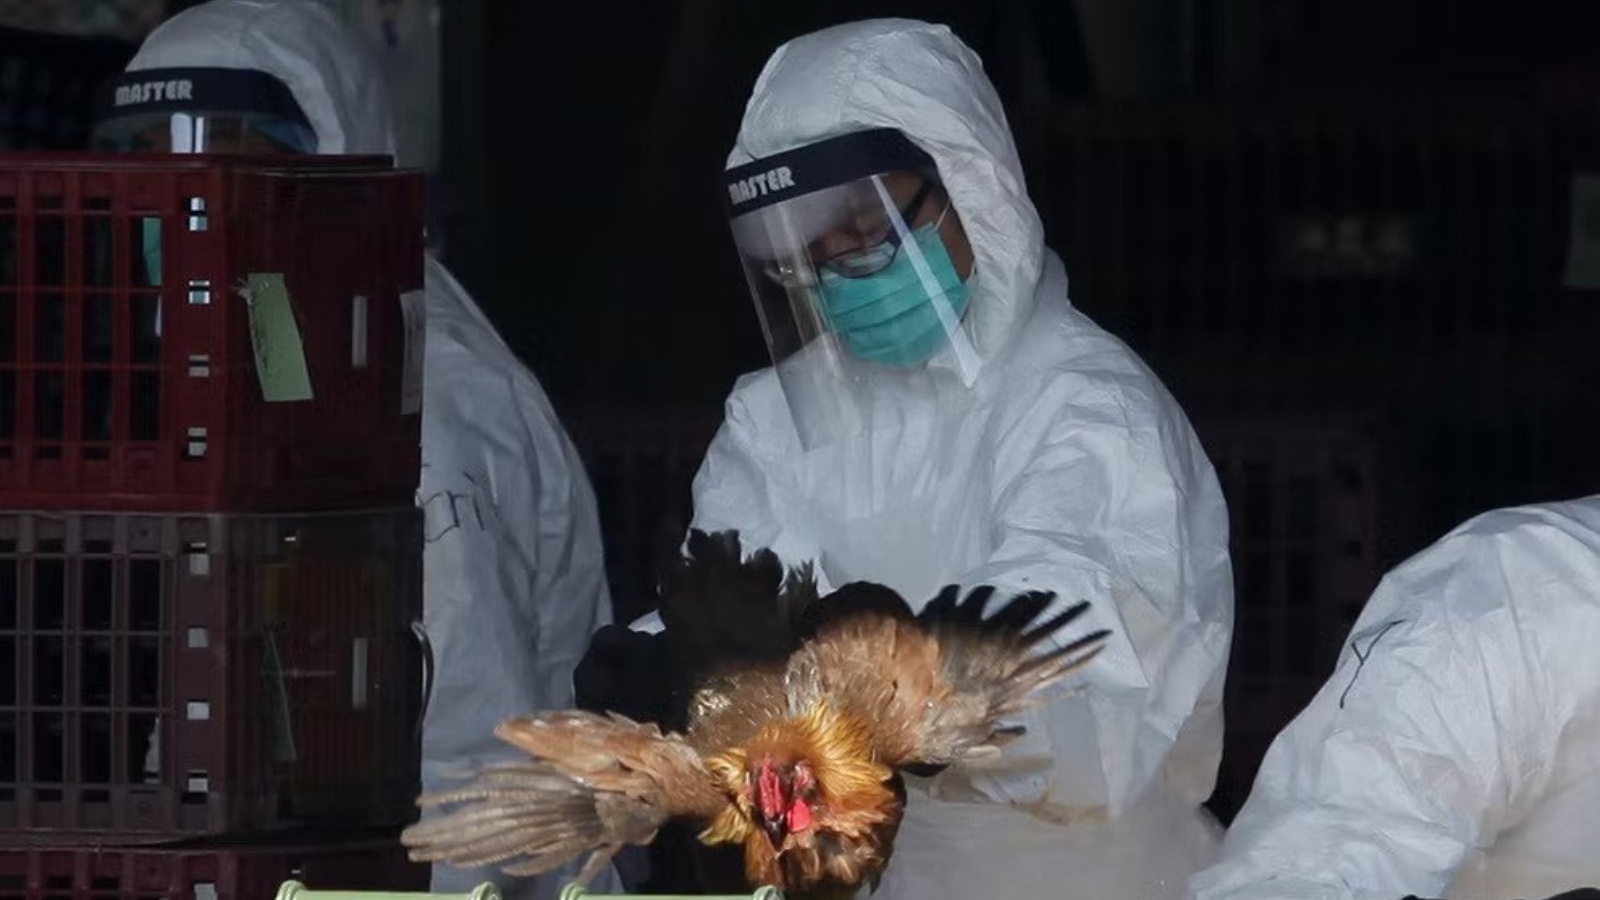 عامل يضع دجاجة في صندوق أثناء عملية إعدام في هونغ كونغ في عام 2014 بعد اكتشاف فيروس H7N9 القاتل في دواجن مستوردة من الصين.